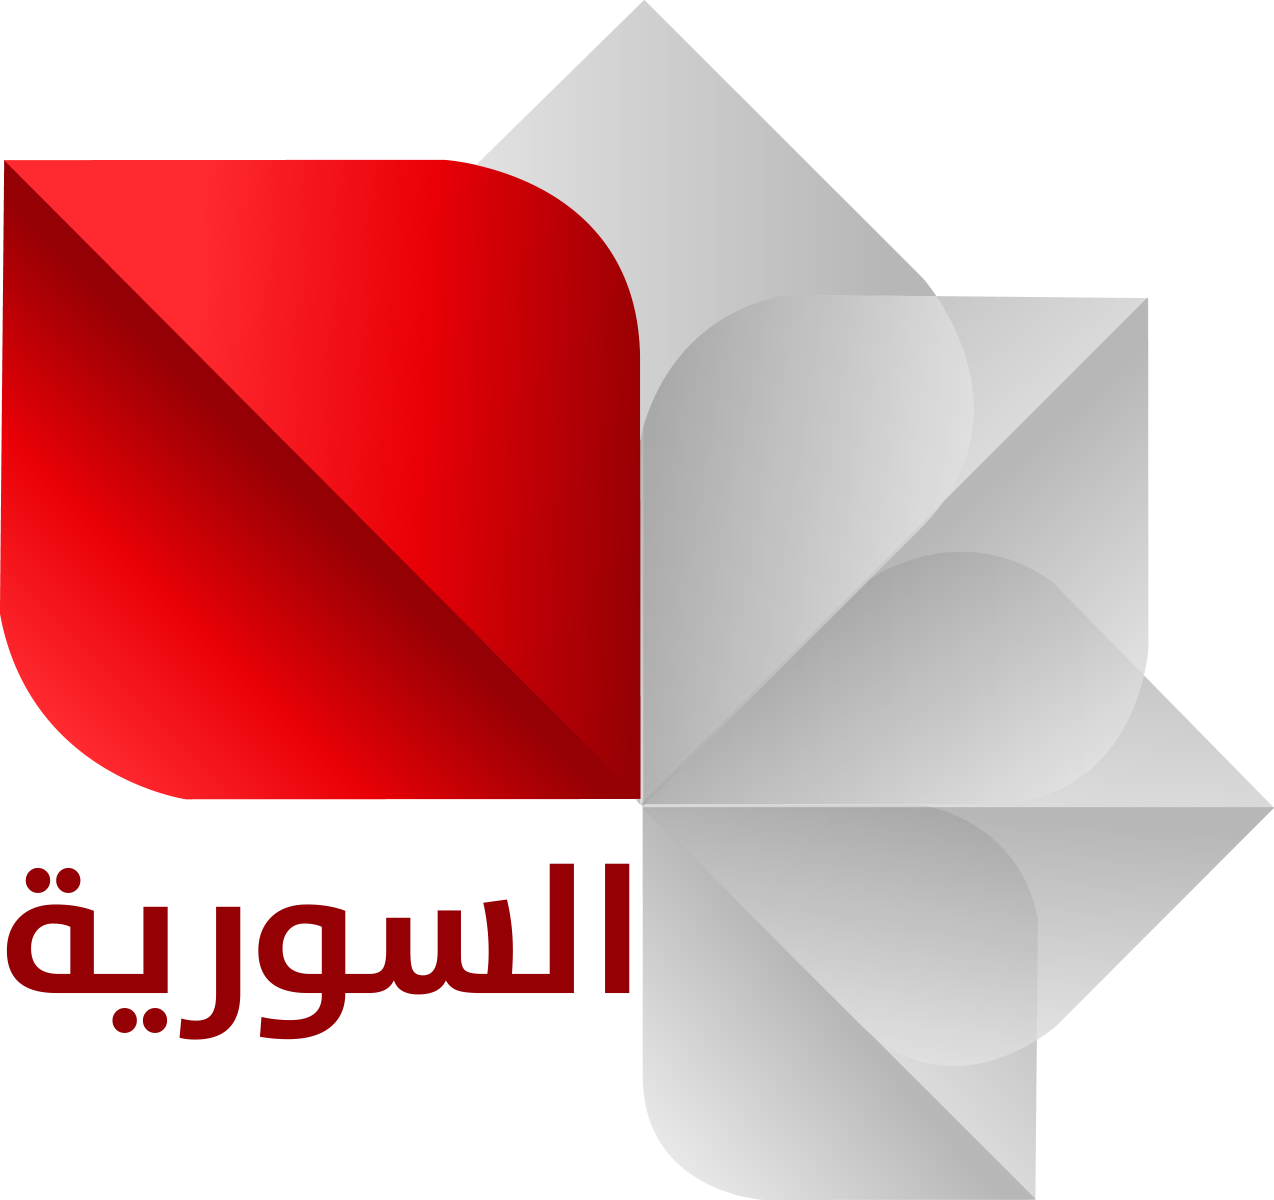 تردد قناة سوريا الفضائية في رمضان 2020